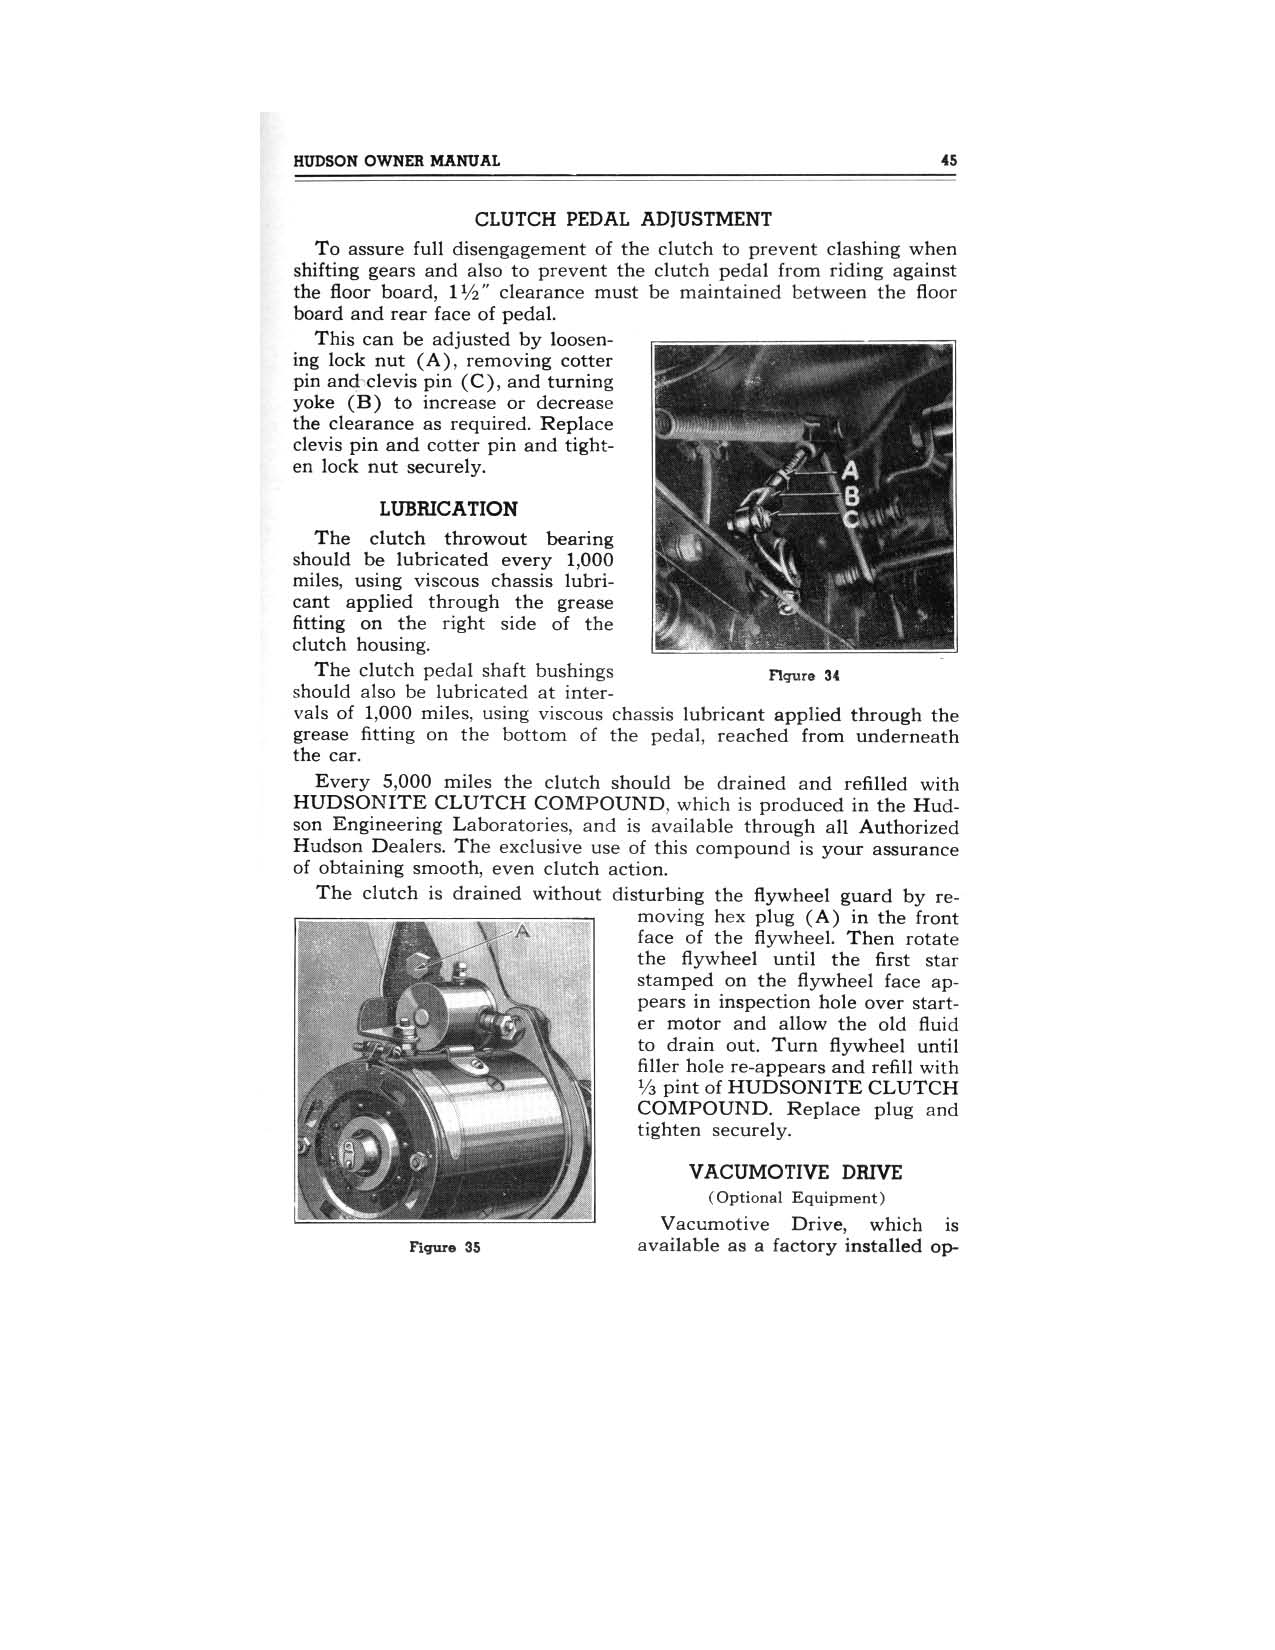 1949 Hudson Owners Manual-47